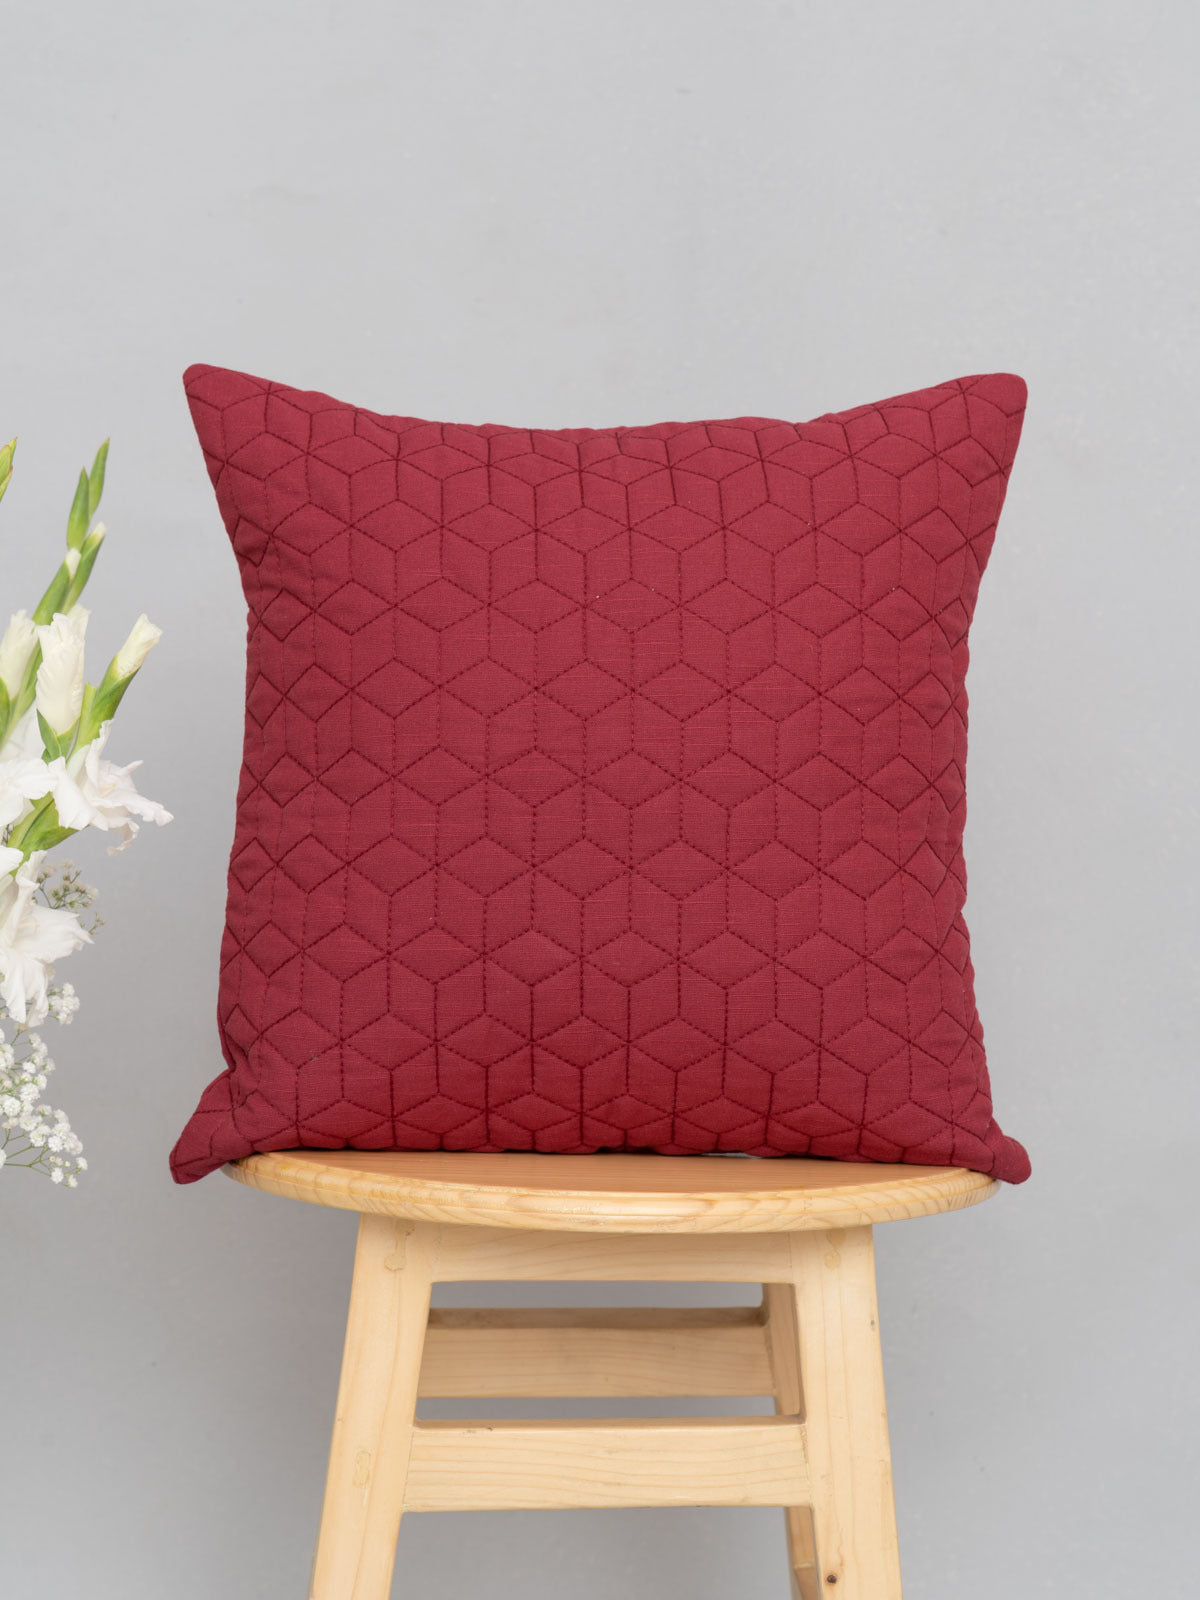 Saga 100% cotton boho geometric cushion cover combo set for sofa- Black and off- white